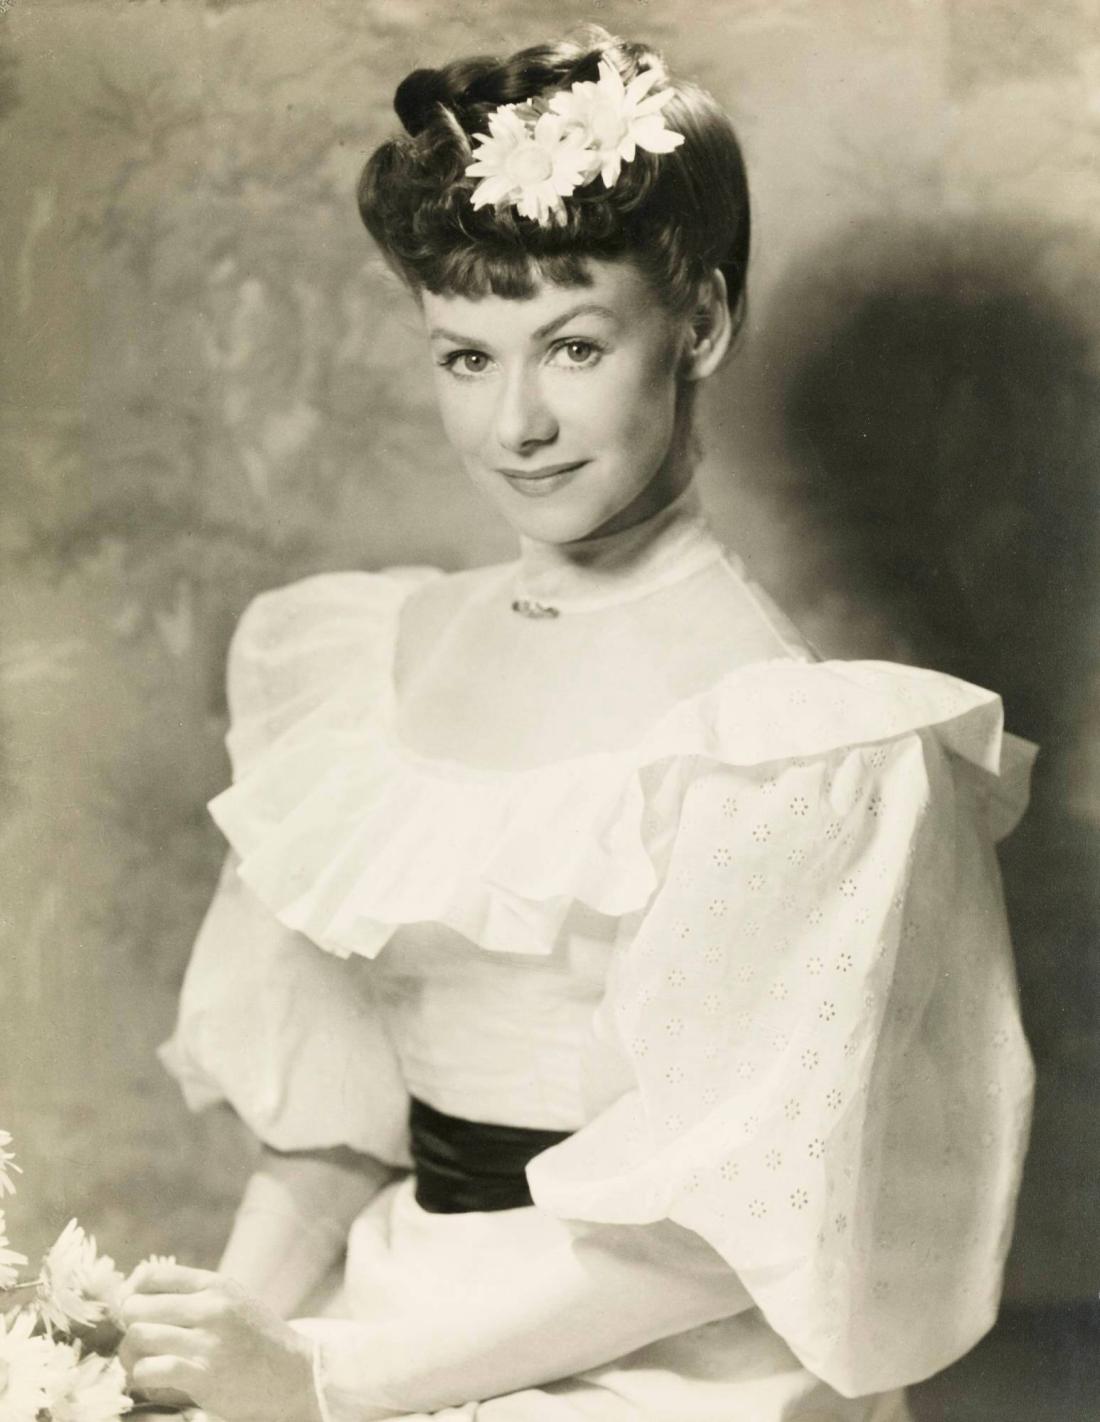 Skådespelerskan Sonja Wigert i filmen Räkna de lyckliga stunderna blott, 1944